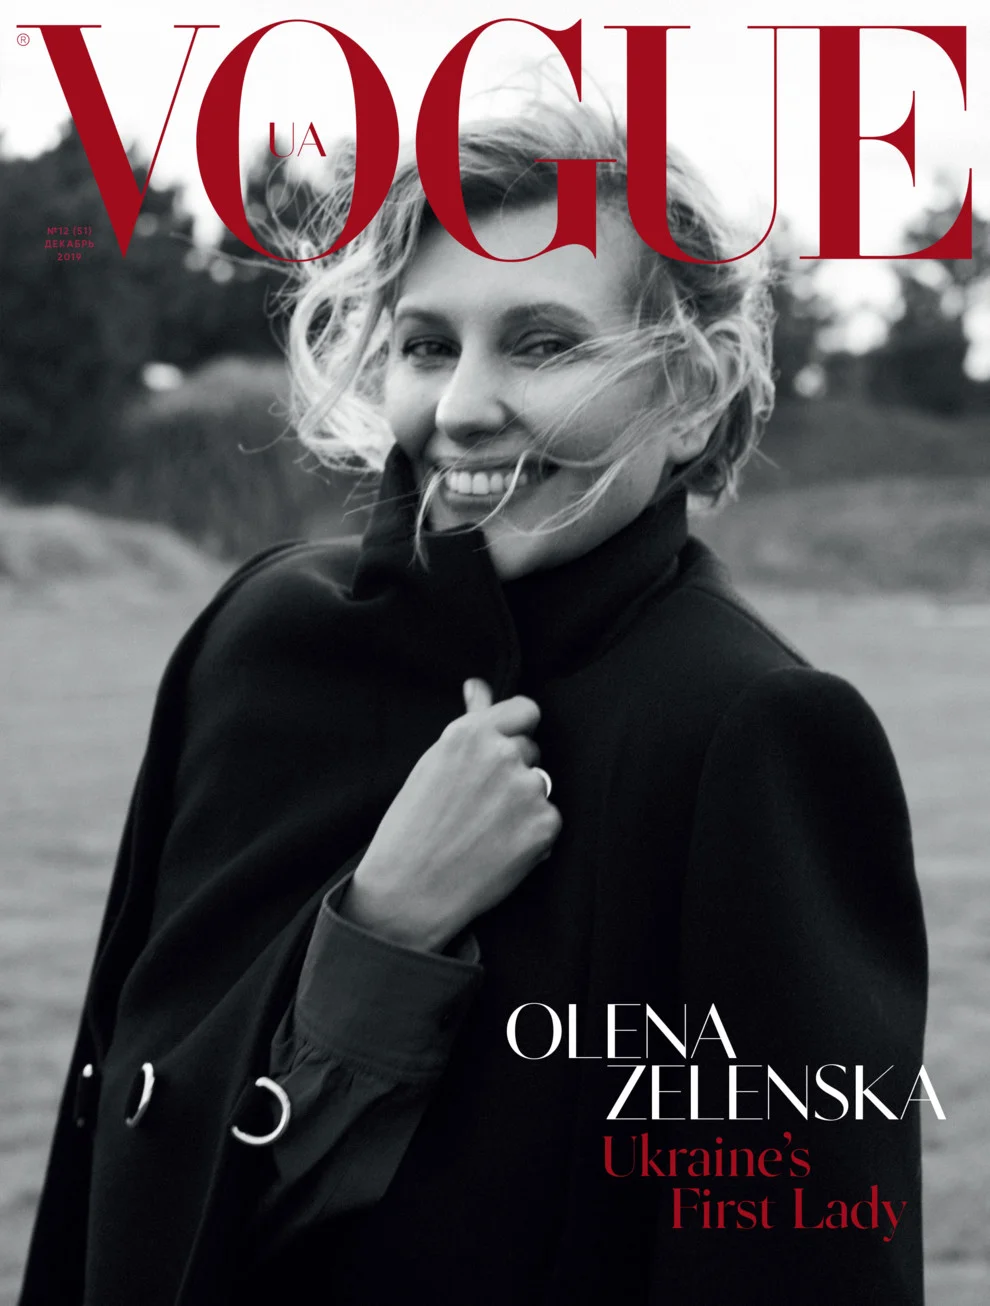 Первая леди Украины снялась для обложки Vogue, показав себя с неизвестной стороны - фото 457397